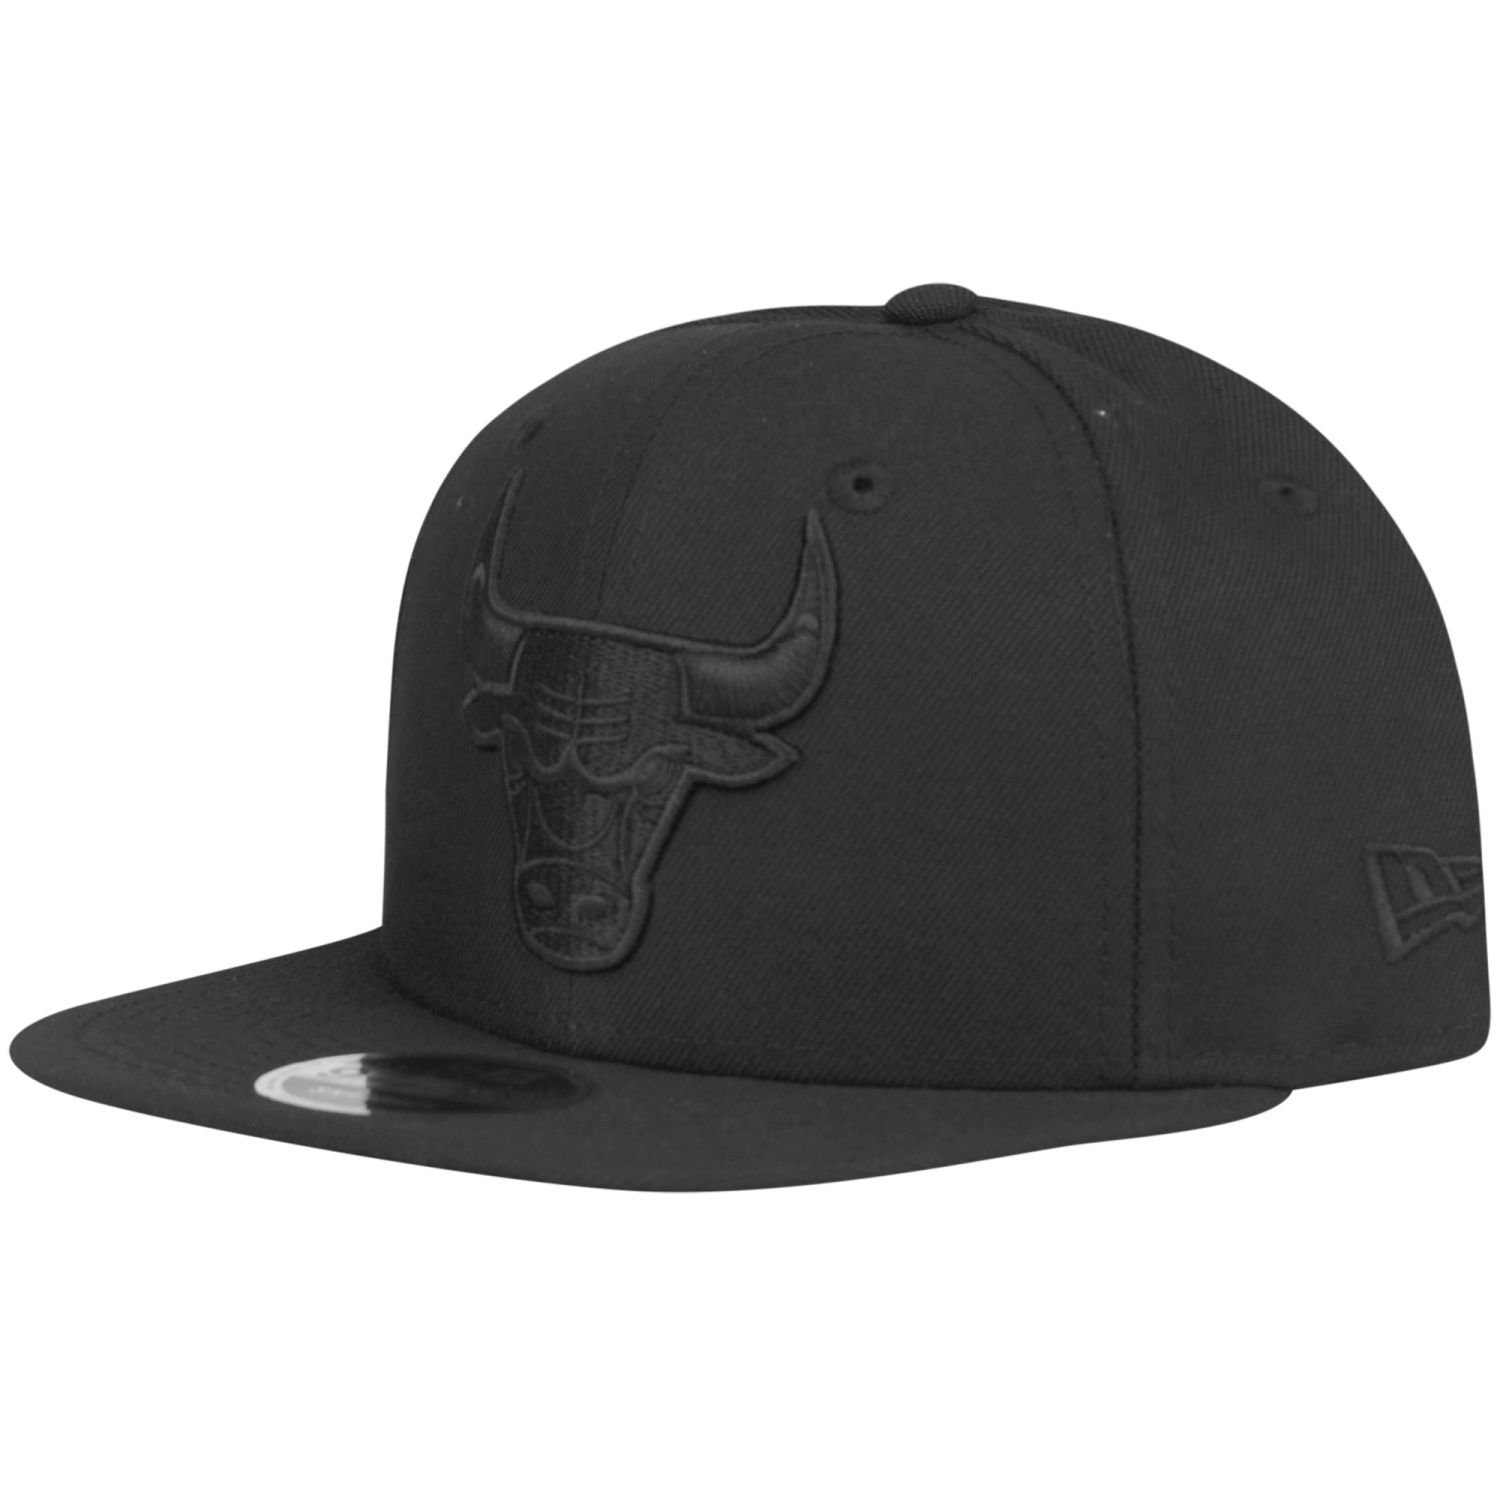 New Era Snapback Cap 9Fifty Bulls Chicago Original